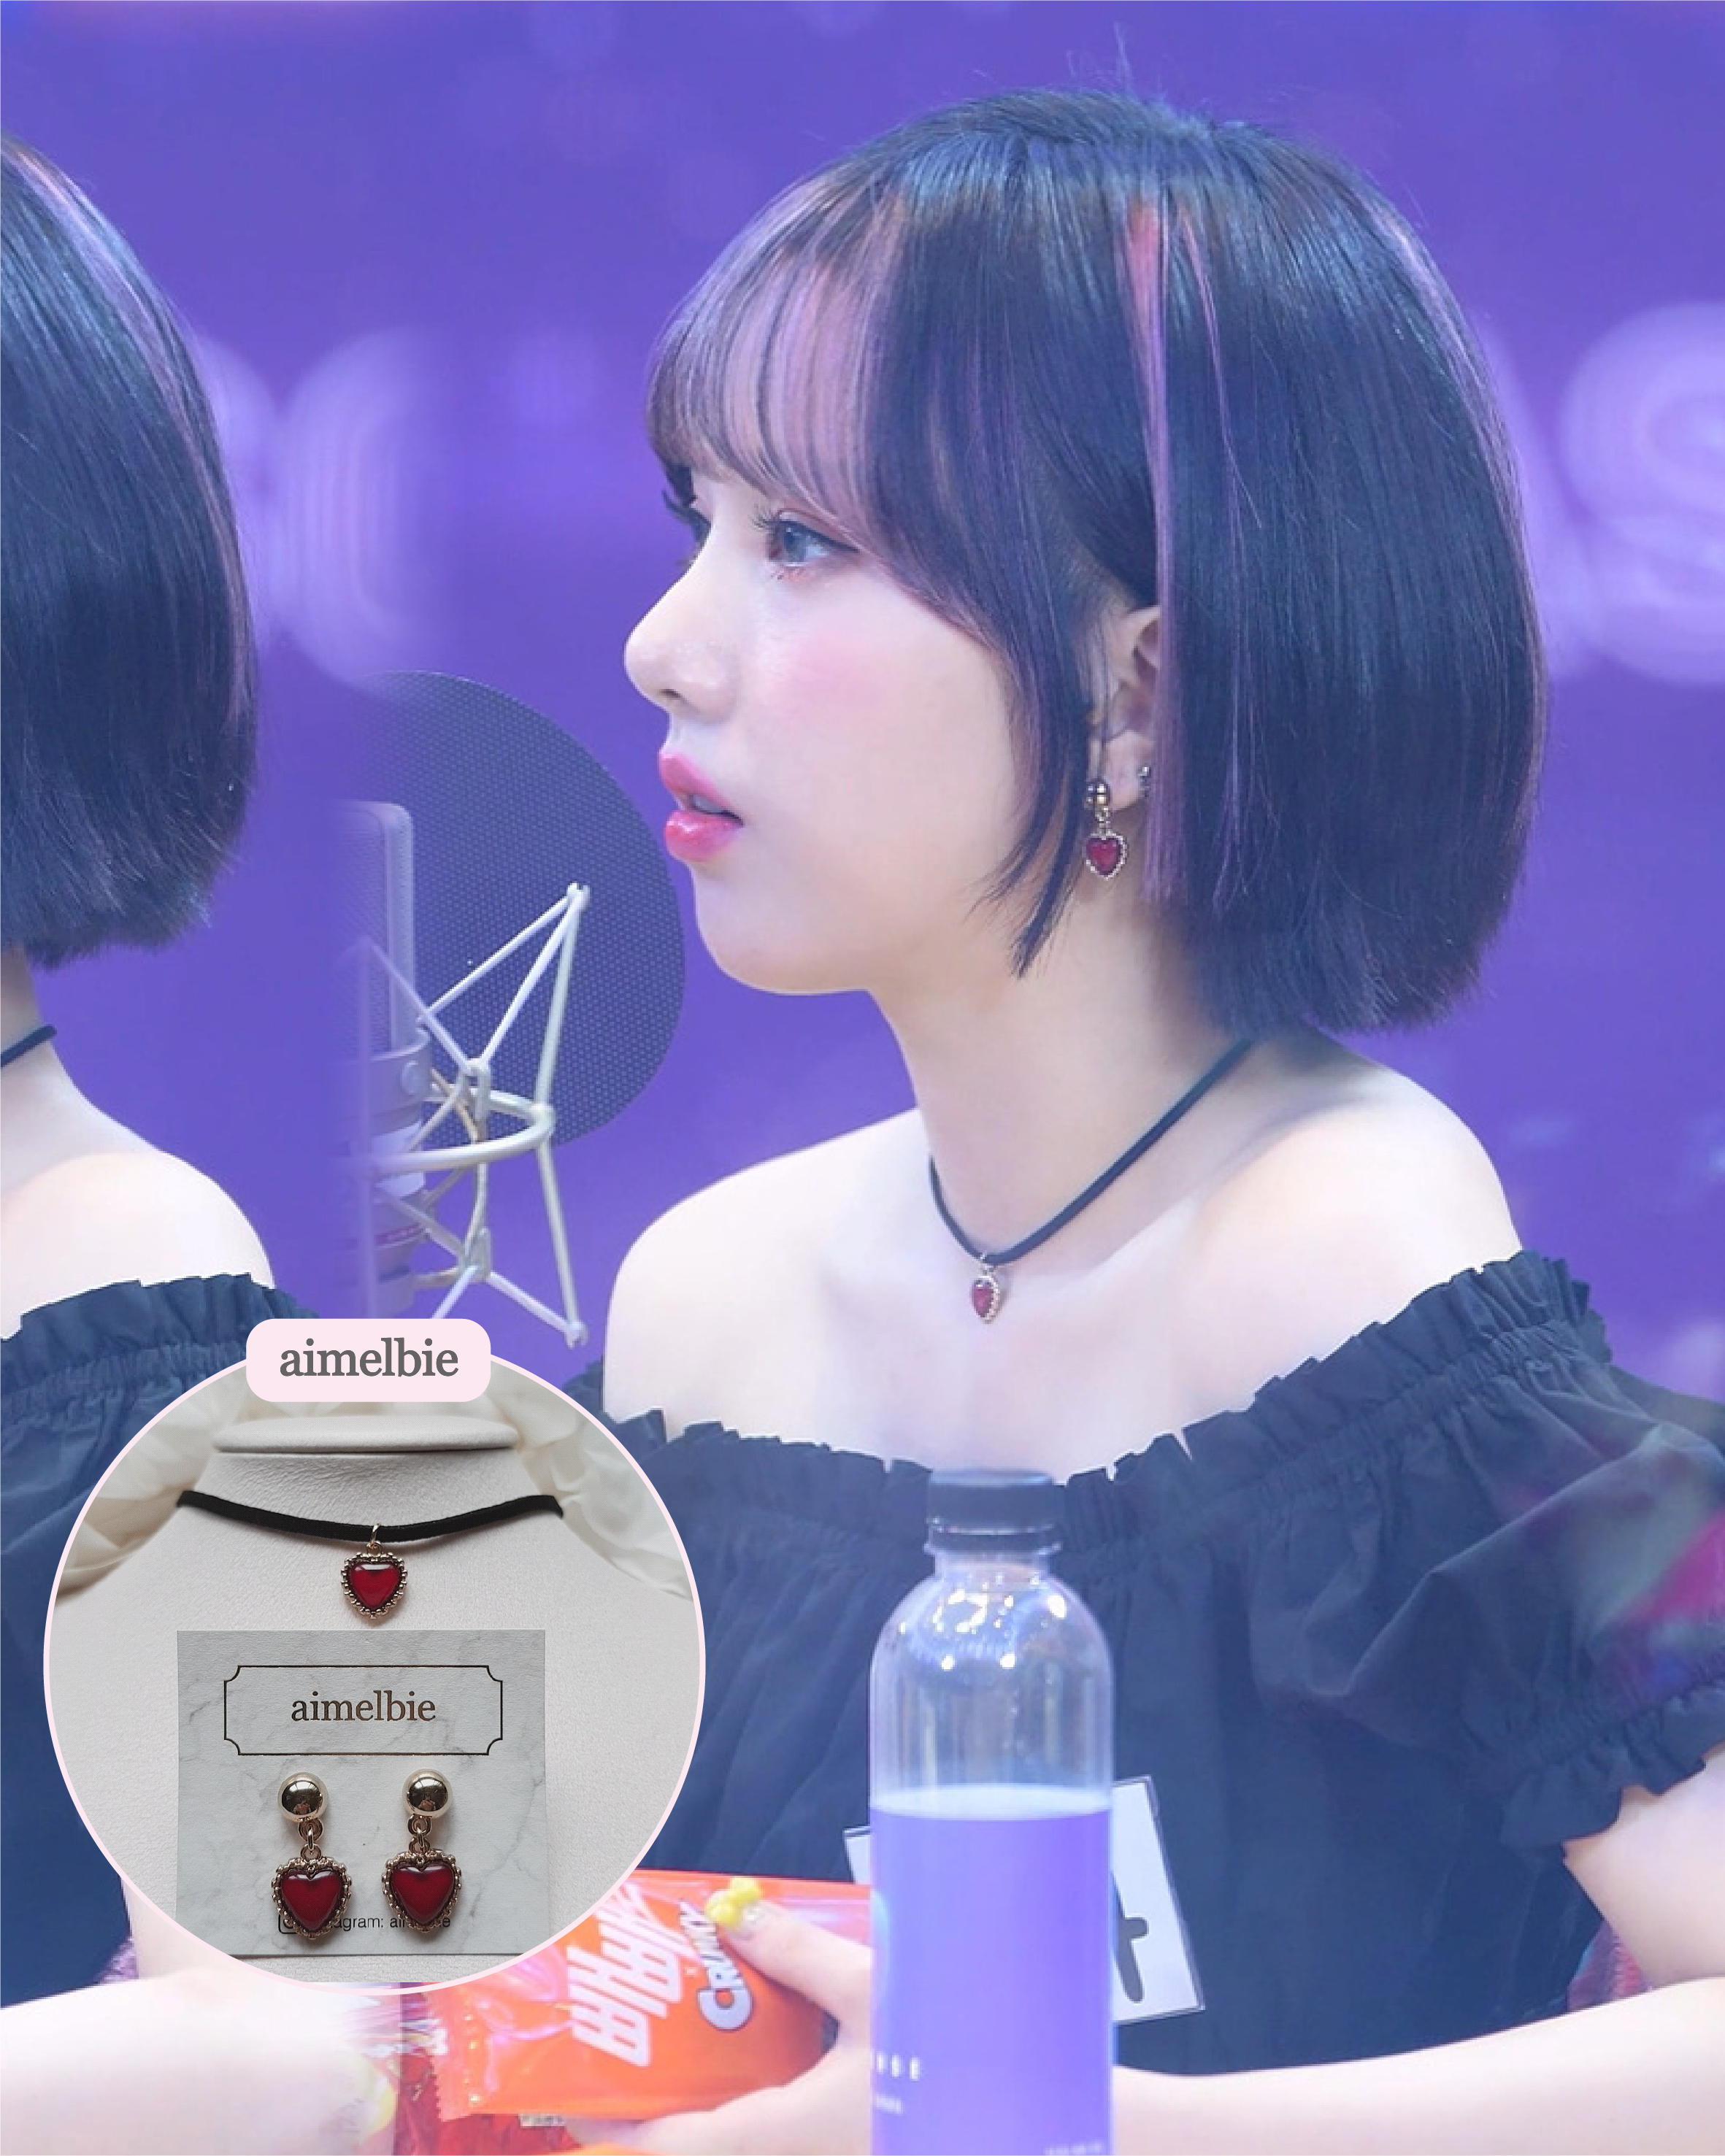  Burgundy Heart Earrings and Choker Set (Twice Dahyun, VIVIZ Eunha, Kep1er Dayeon, Choi Yena Choker)